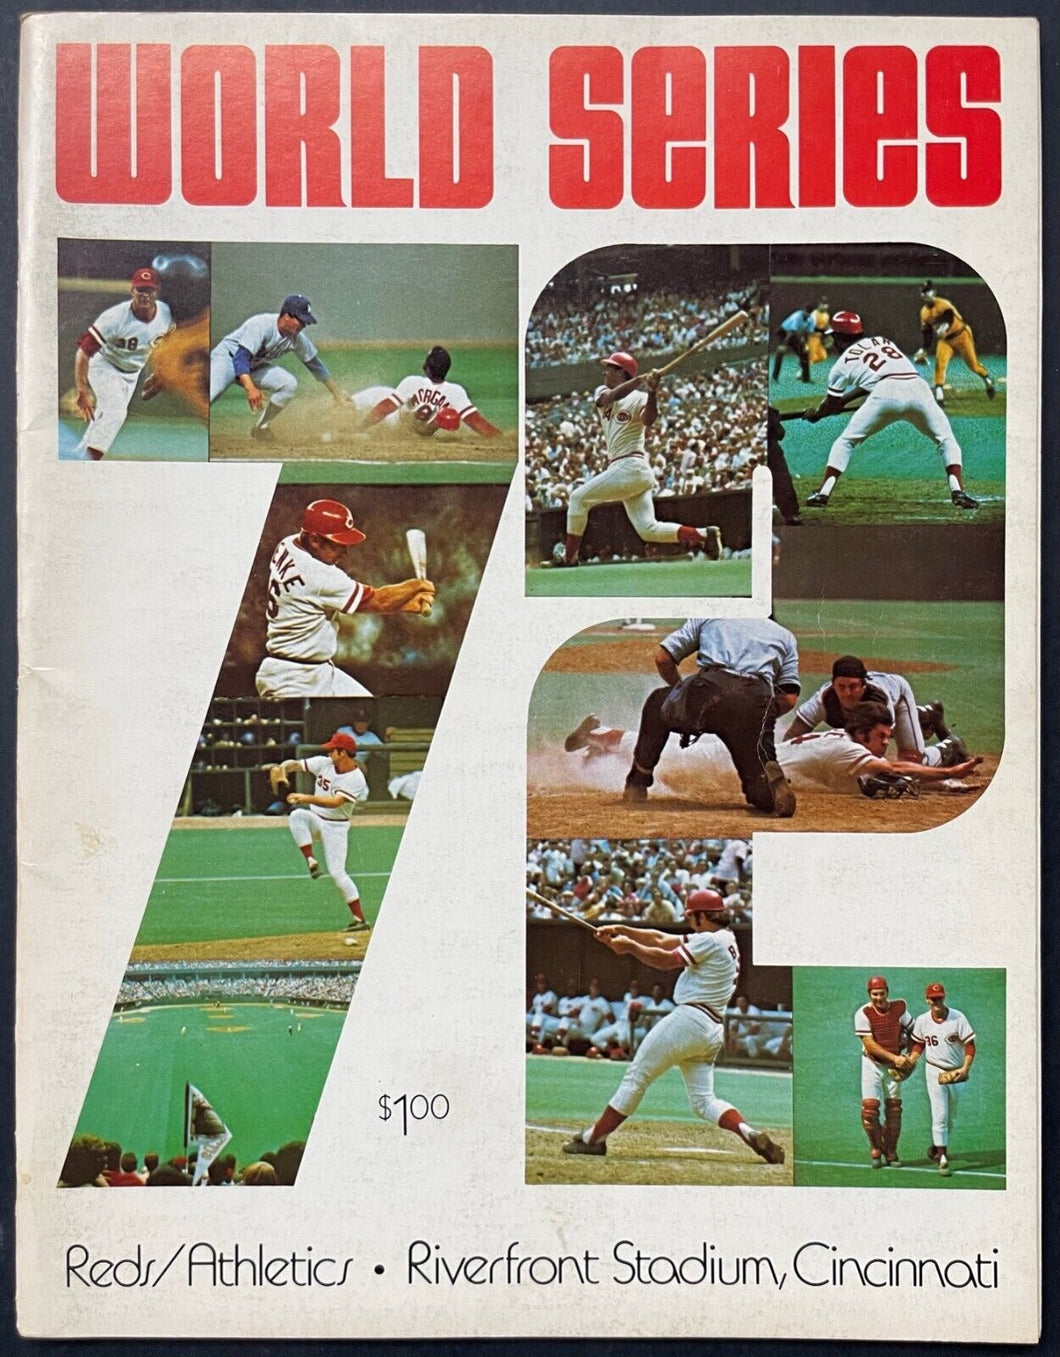 1972 Cincinnati Reds vs. Oakland Athletics World Series Program Baseball VTG MLB